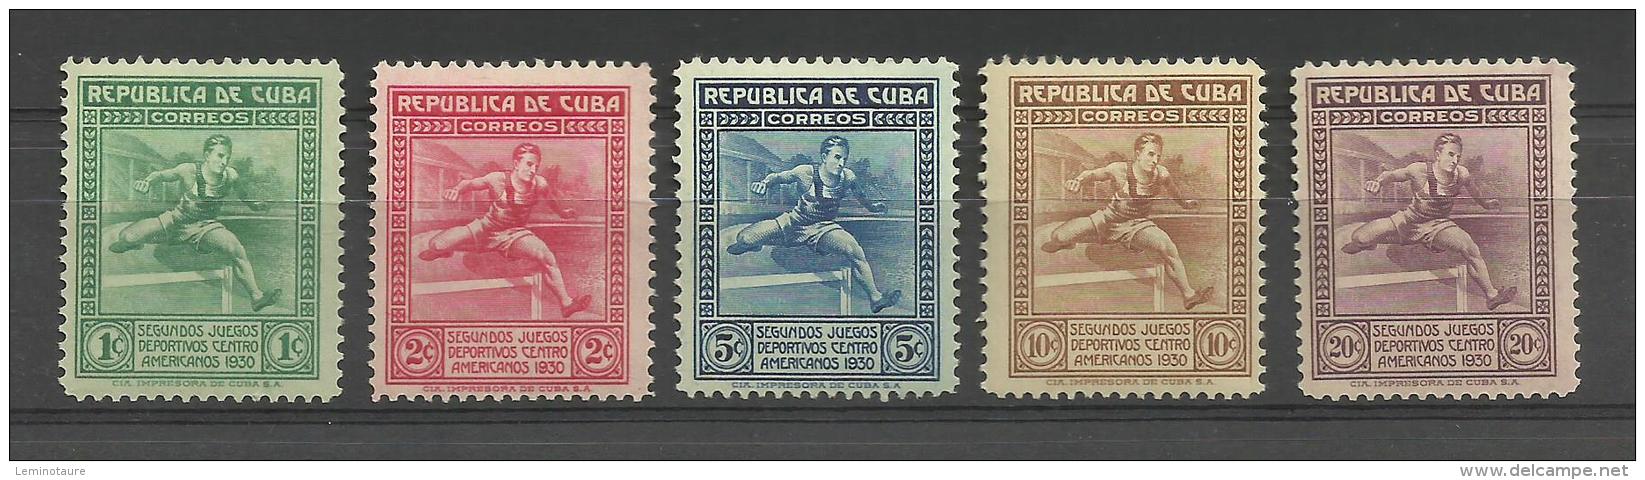 Yvert N° 207/11 -  Juegos Déportivos Centro Américanos 1930 # MH # - Nuovi